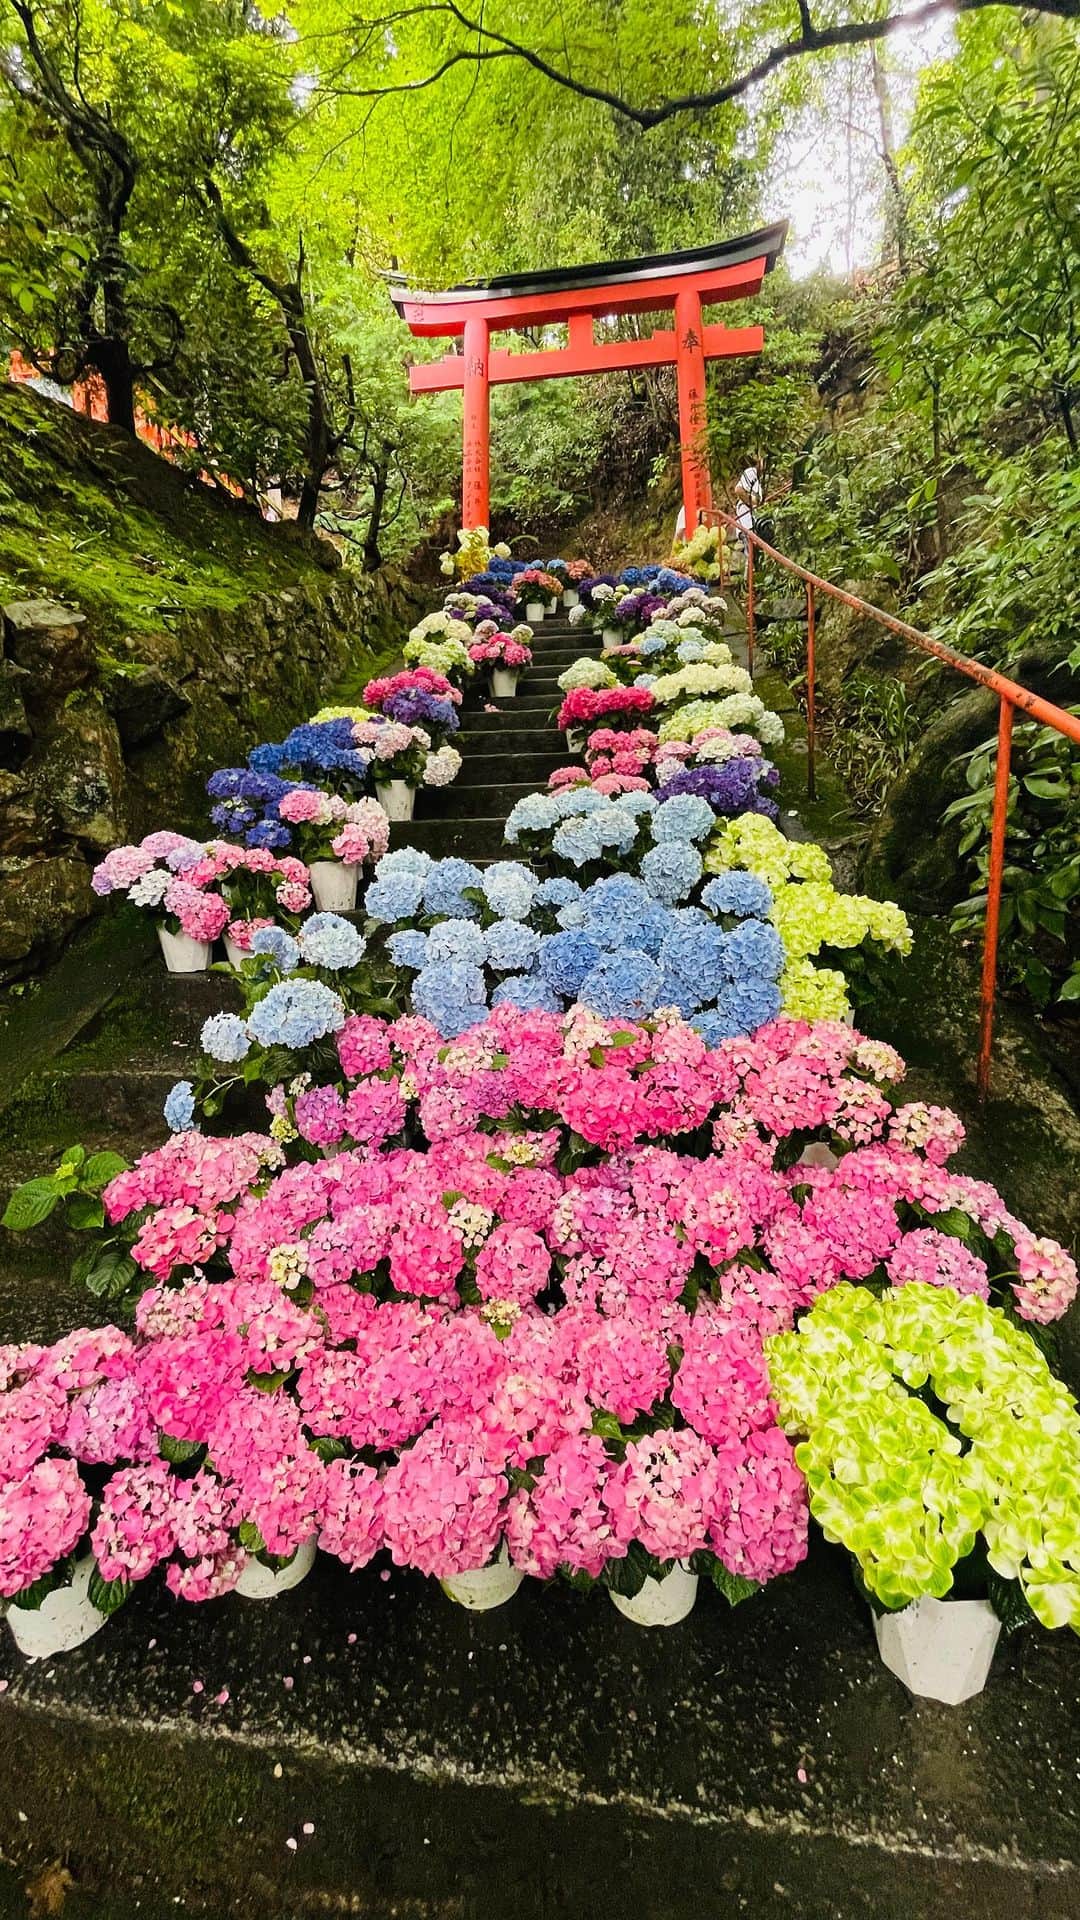 小嶋晶子のインスタグラム：「四季折々の花で彩られる「花手水」発祥のお寺といわれている、柳谷観音 楊谷寺へ。 境内には約5,000株の紫陽花が… 少しタイミングが早かったのかなぁ？ 「あじさいのみち」と呼ばれる参道は寂しかった。 今度は満開の時期に行ってみたい🏵️ Yanagidanikannon-Yokoku-ji Temple, located in Nagaokakyo City, Kyoto Prefecture, is a temple of the Seizan Jodo sect. This temple is also well known spot for beautiful hydrangeas. #柳谷観音楊谷寺 #柳谷観音 #楊谷寺 #花手水 #紫陽花 #あじさいウィーク #長岡京市 #京都 #日本 #yanagidanikannonyoukokuji #yanagidanikannonyoukokujitemple  #yanagidanikannon  #youkokuji #hydrangeas #hydrangeasweek #nagaokakyoushi  #kyoto  #japan #🇯🇵」